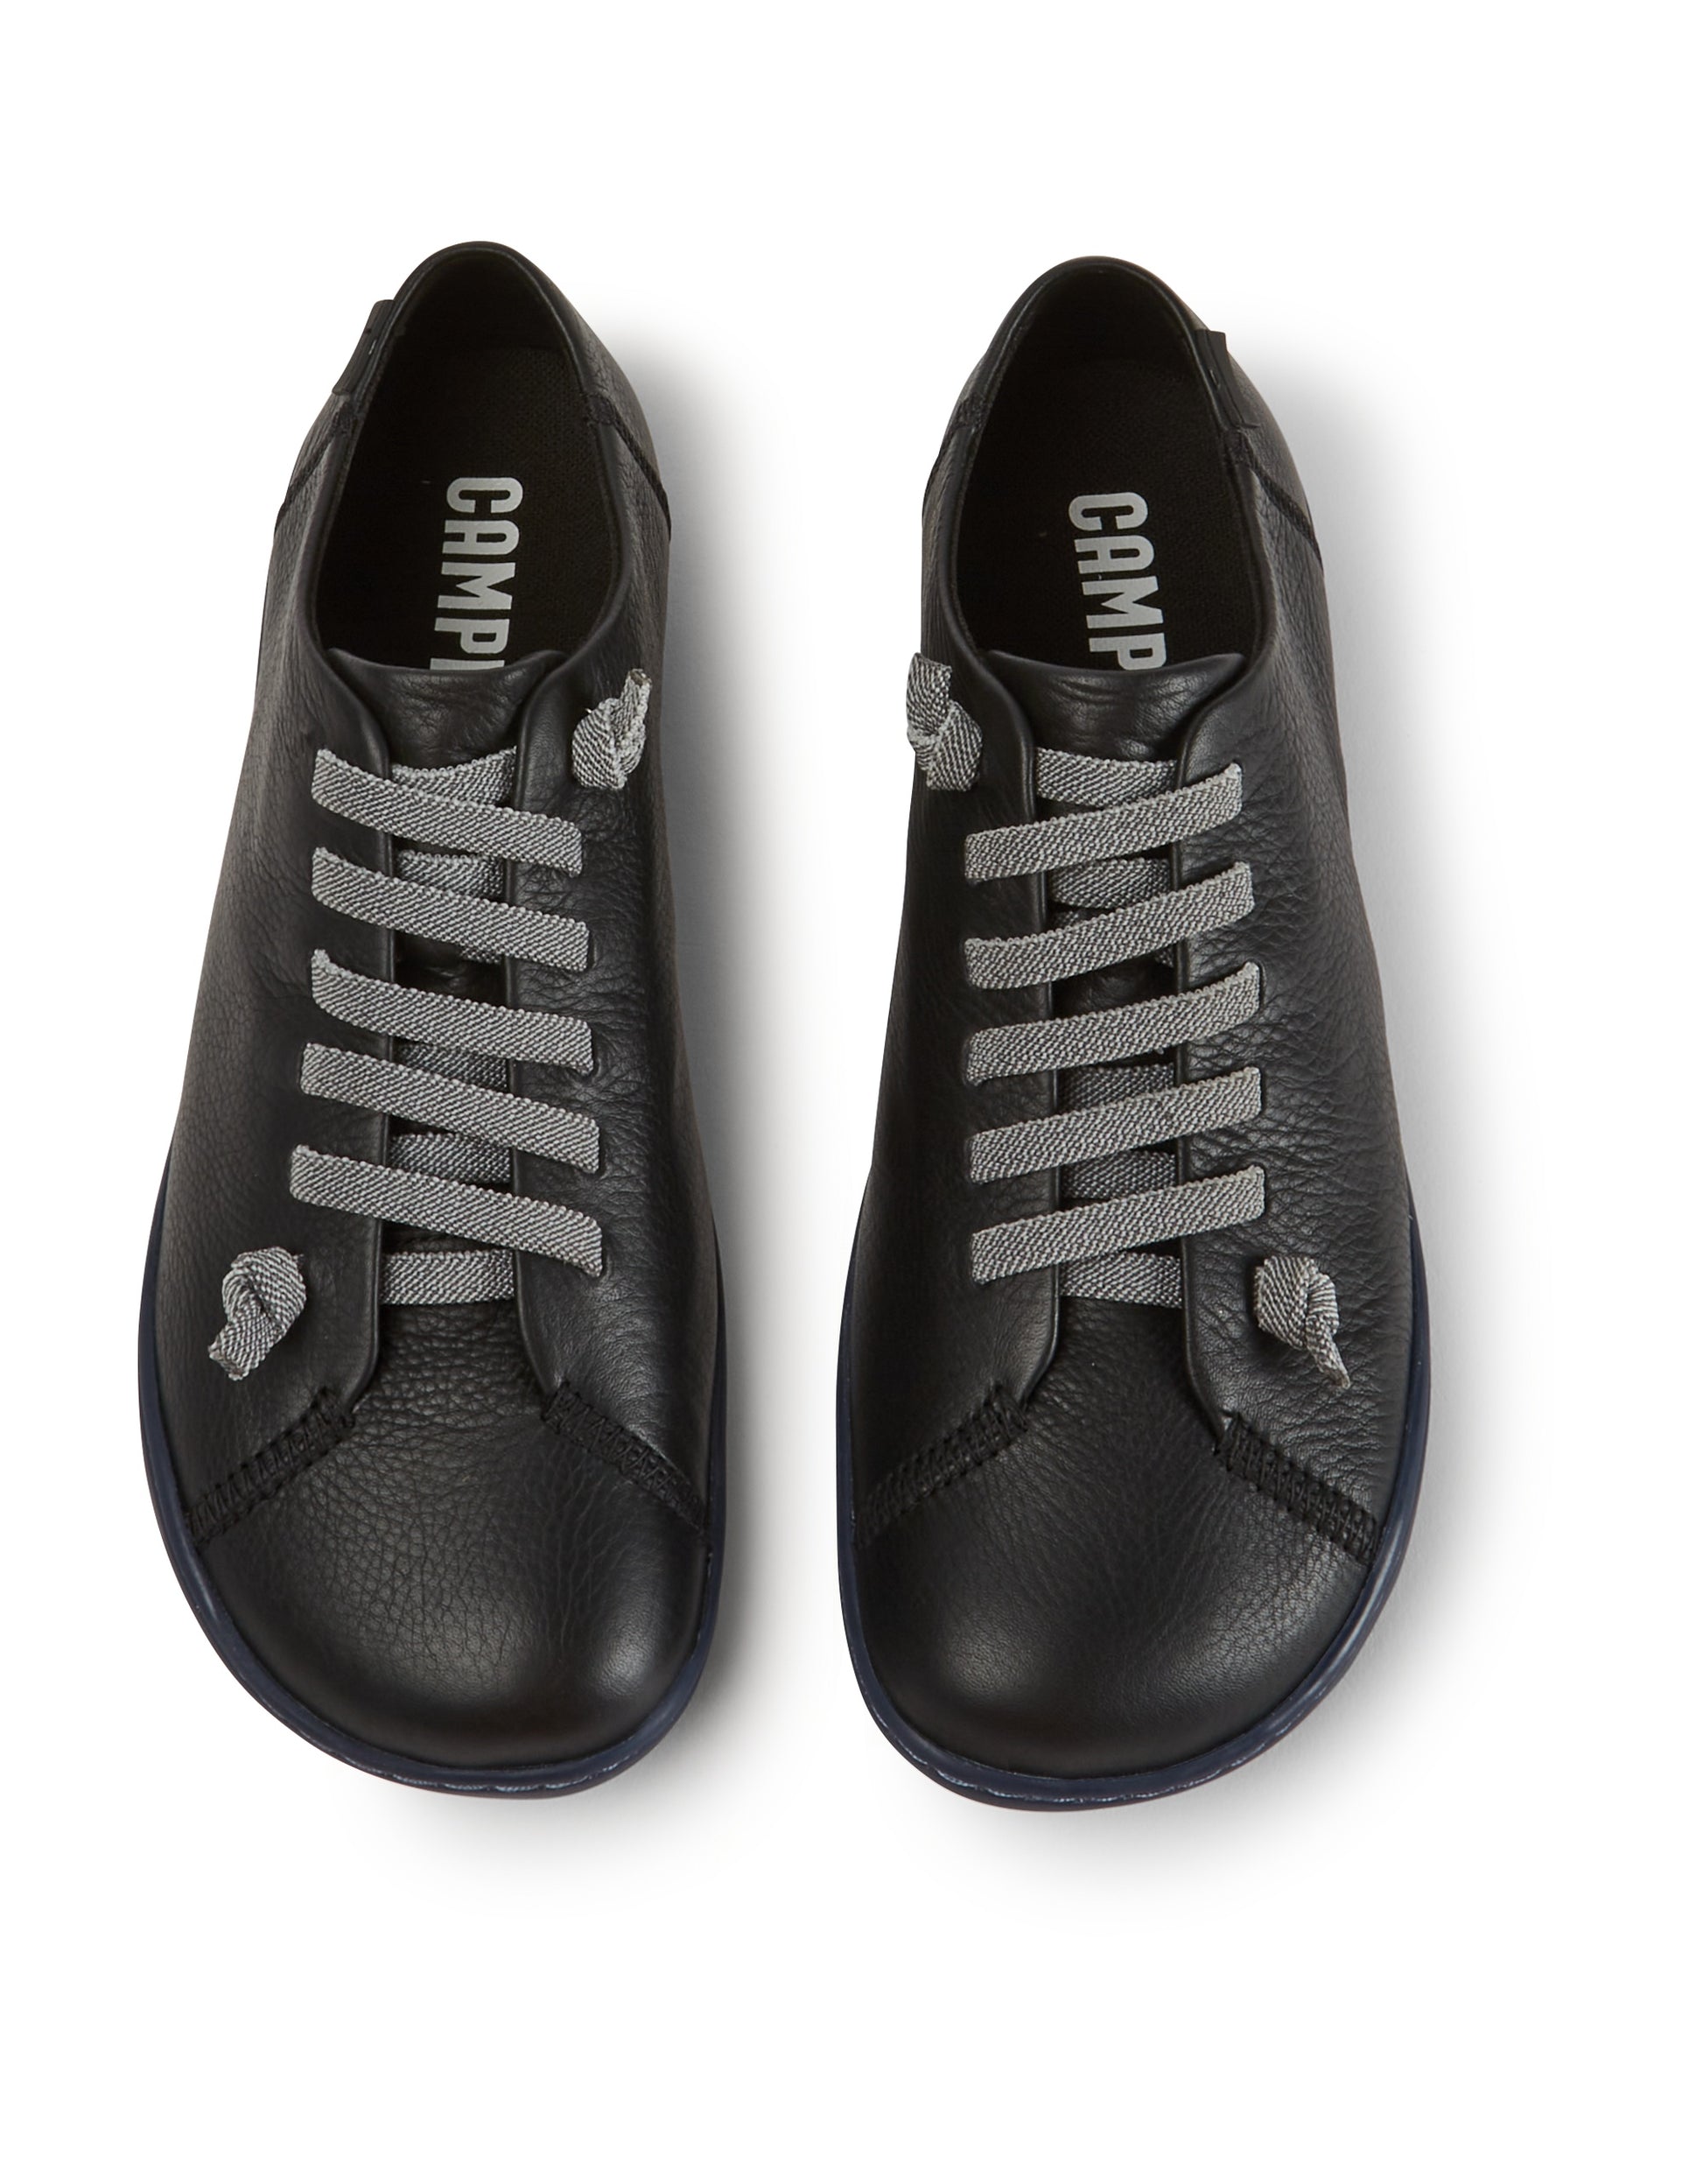 Camper K200514  Peu Cami black lace up shoe - Imeldas Shoes Norwich